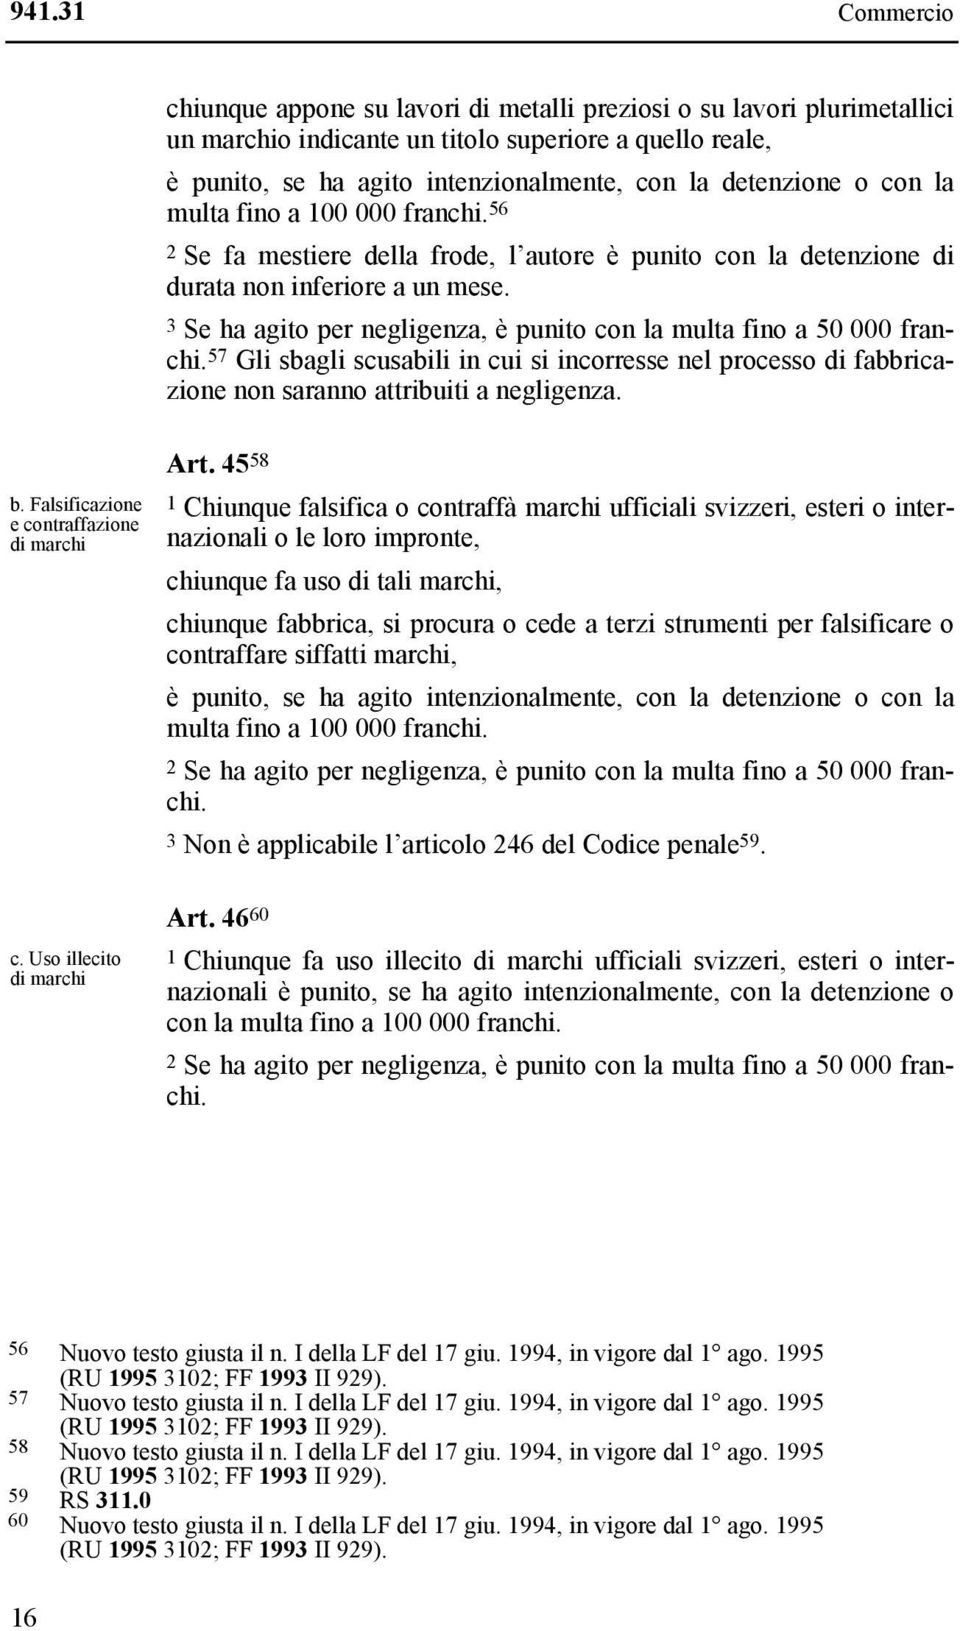 3 Se ha agito per negligenza, è punito con la multa fino a 50 000 franchi. 57 Gli sbagli scusabili in cui si incorresse nel processo di fabbricazione non saranno attribuiti a negligenza. b.